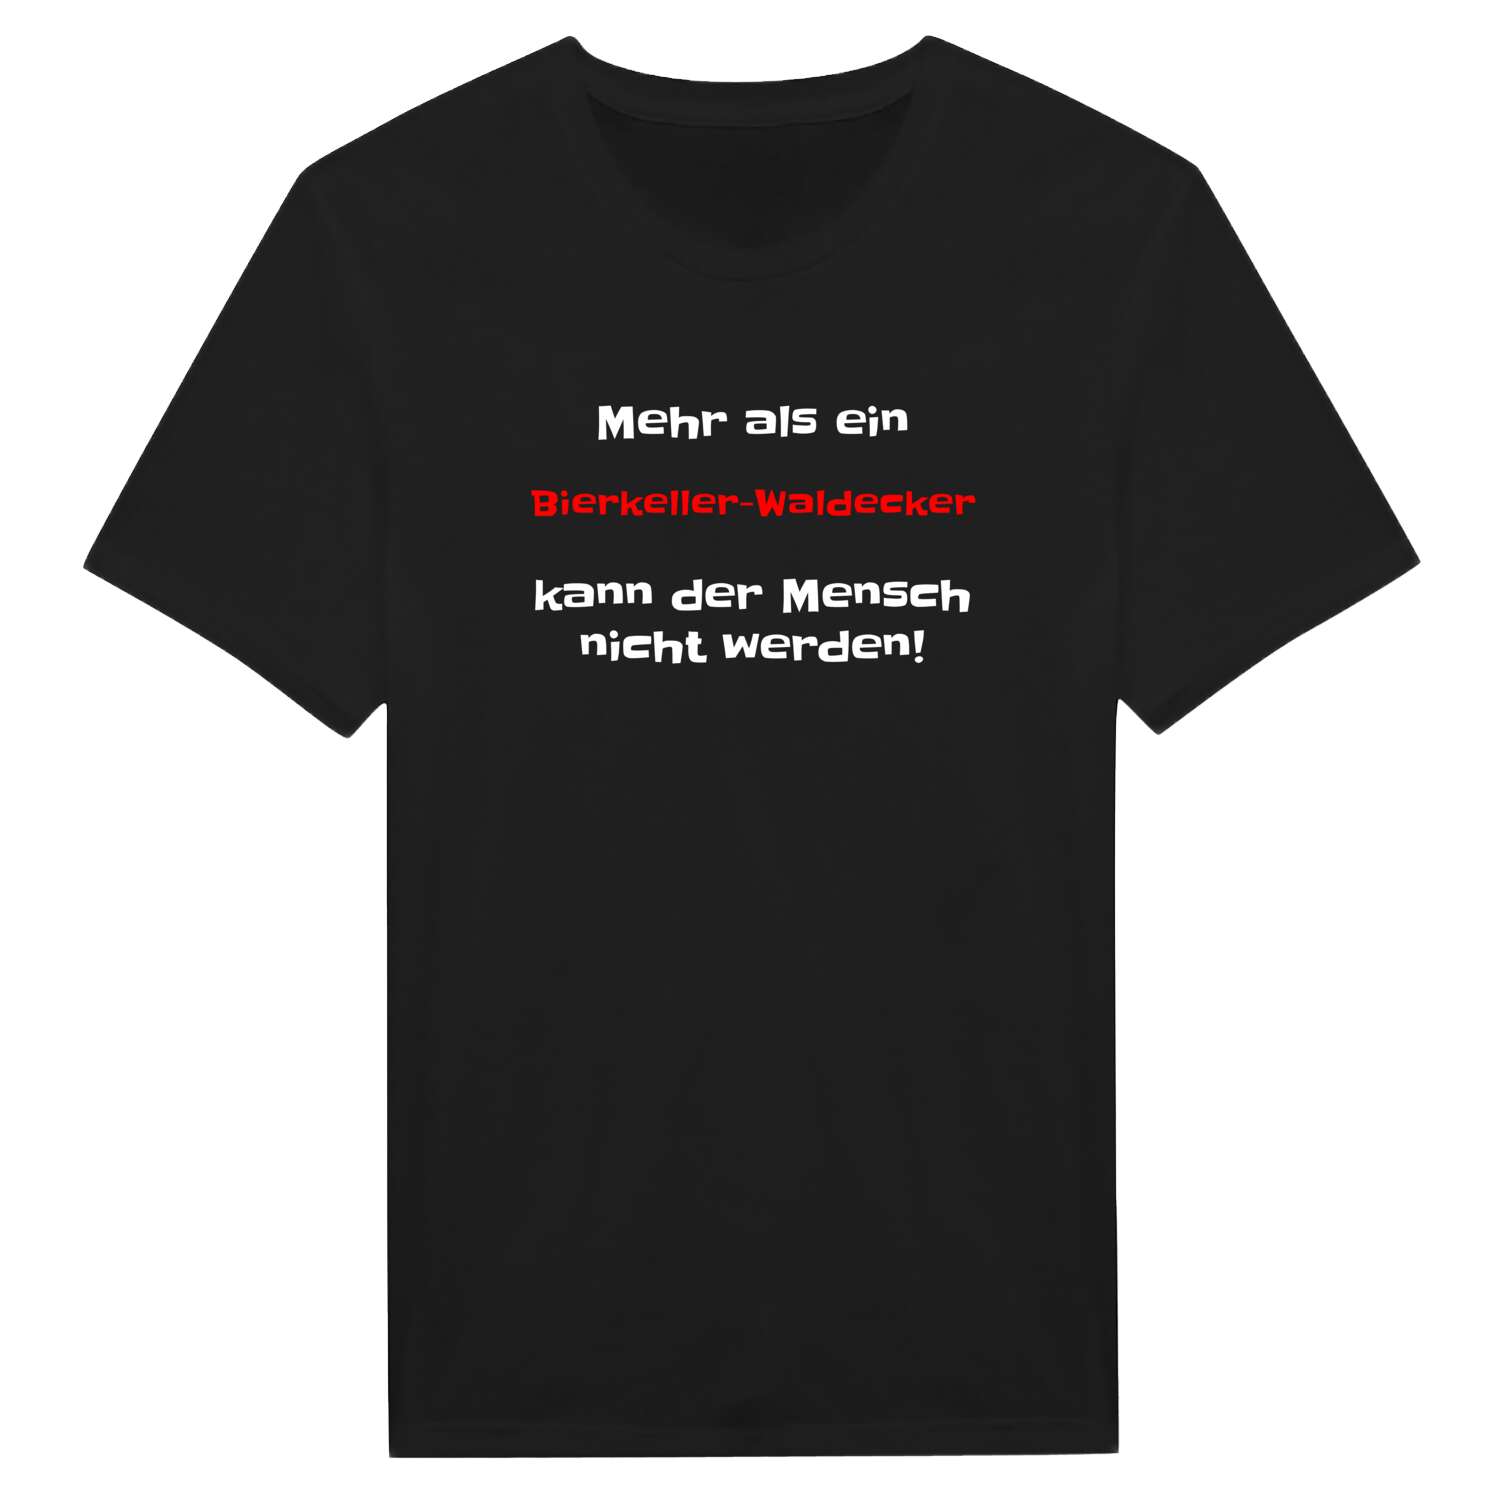 Bierkeller-Waldeck T-Shirt »Mehr als ein«